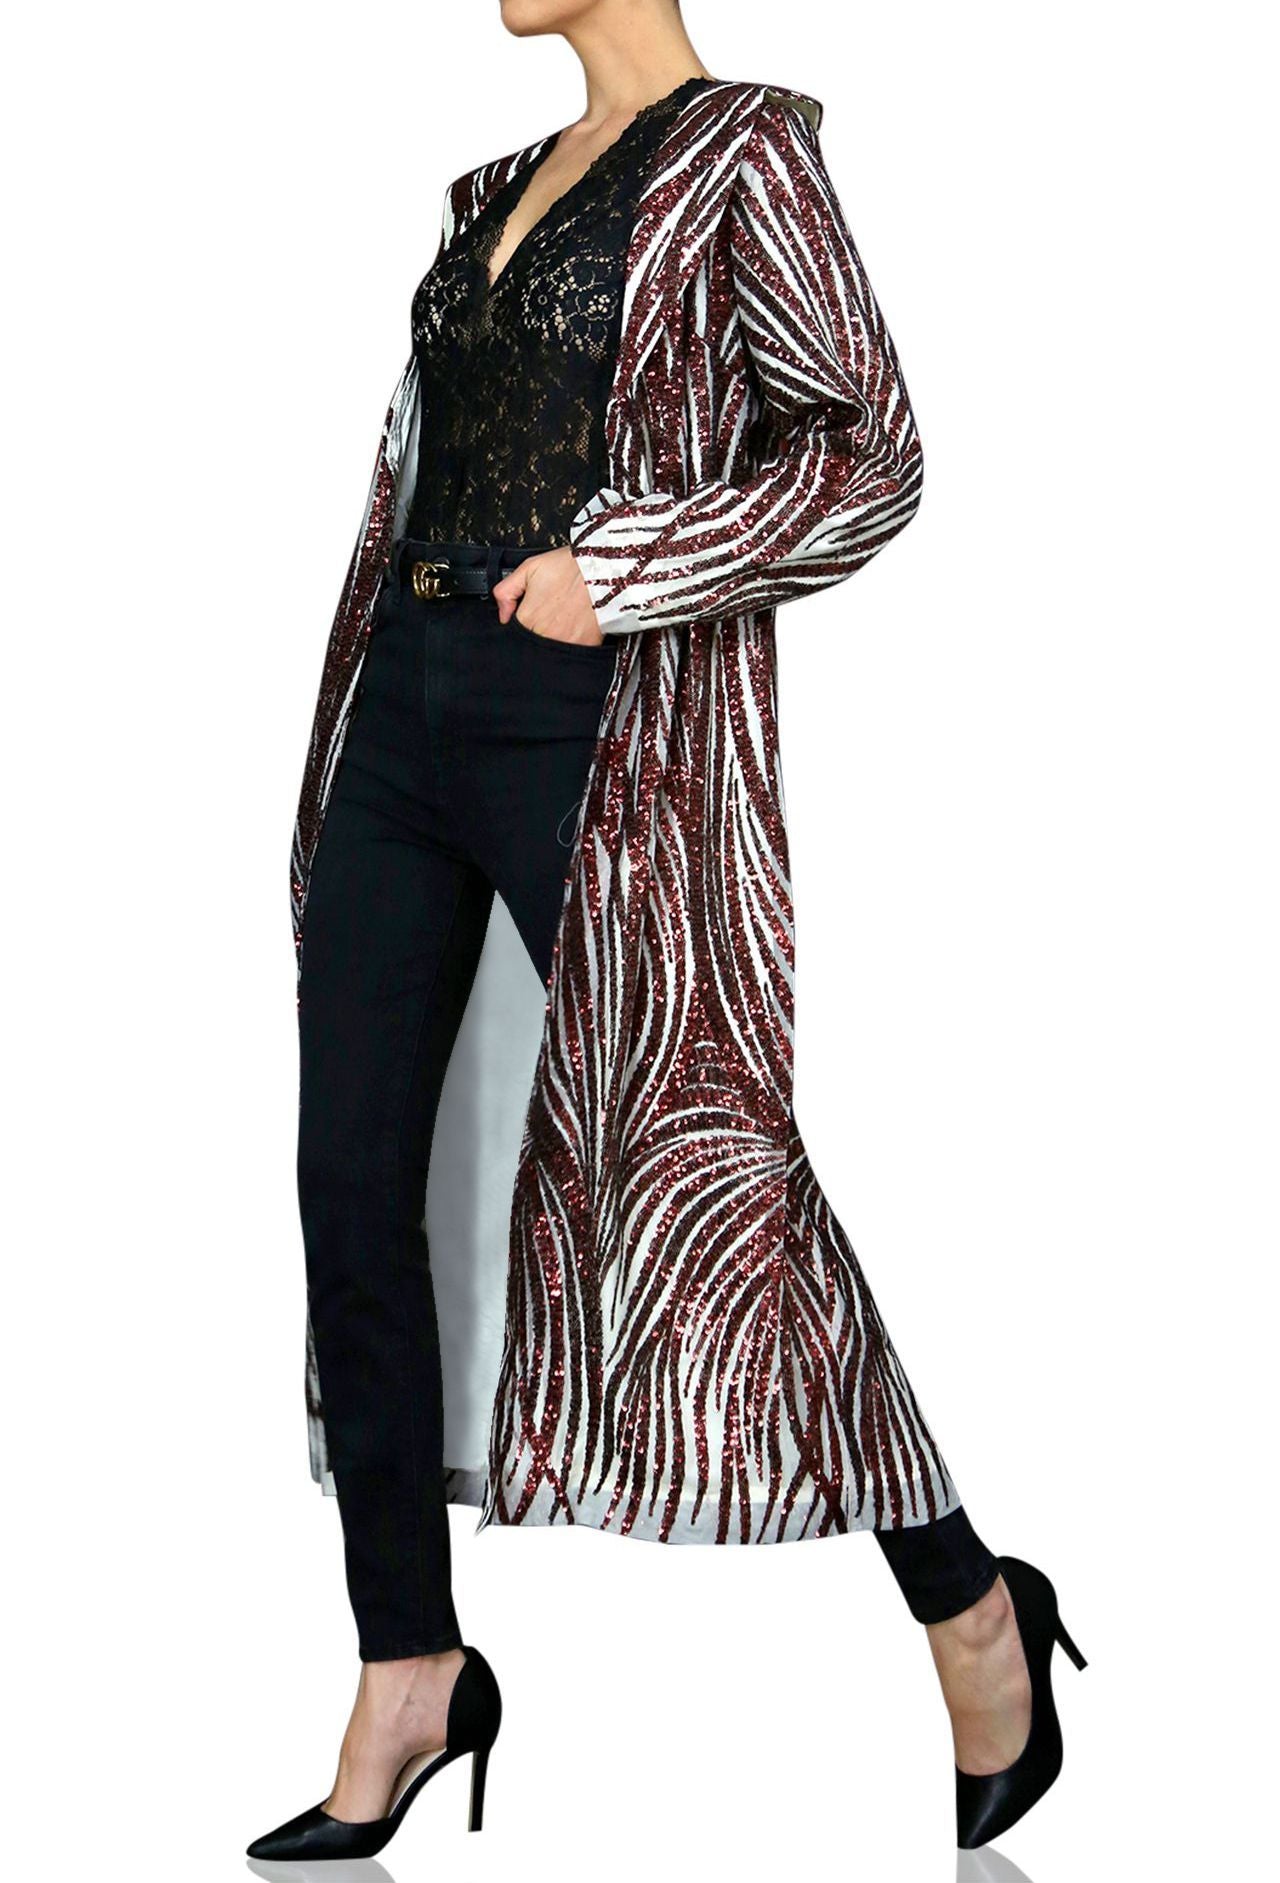 Sequin duster kimono| Long sequin duster Online {Sequin Duster Jacket ...